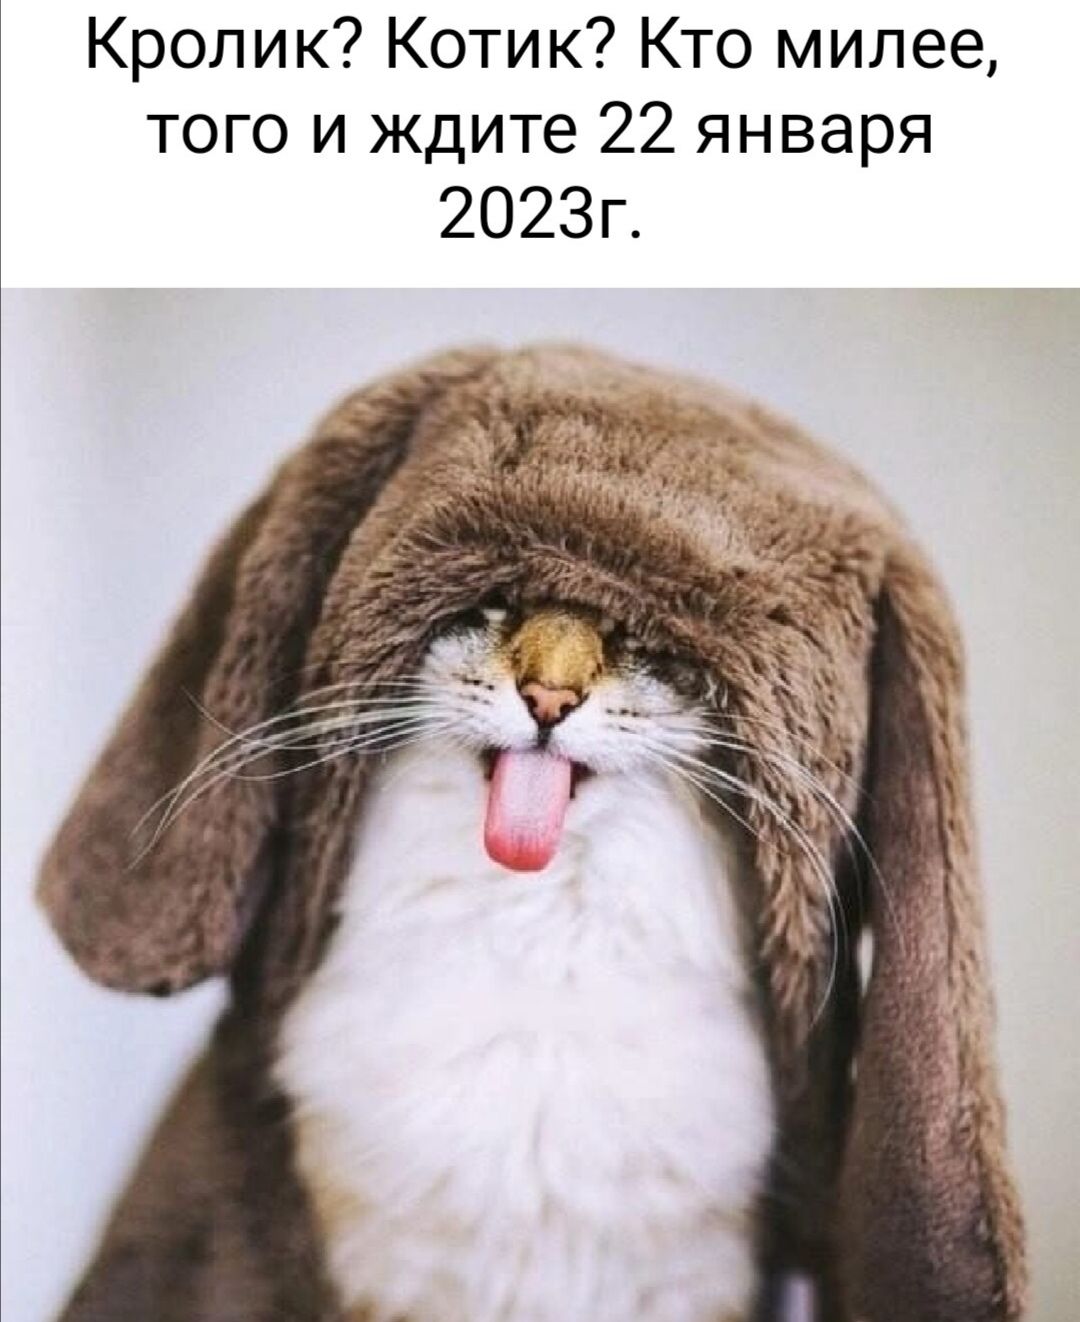 Кролик Котик Кто милее того и ждите 22 января 2023г